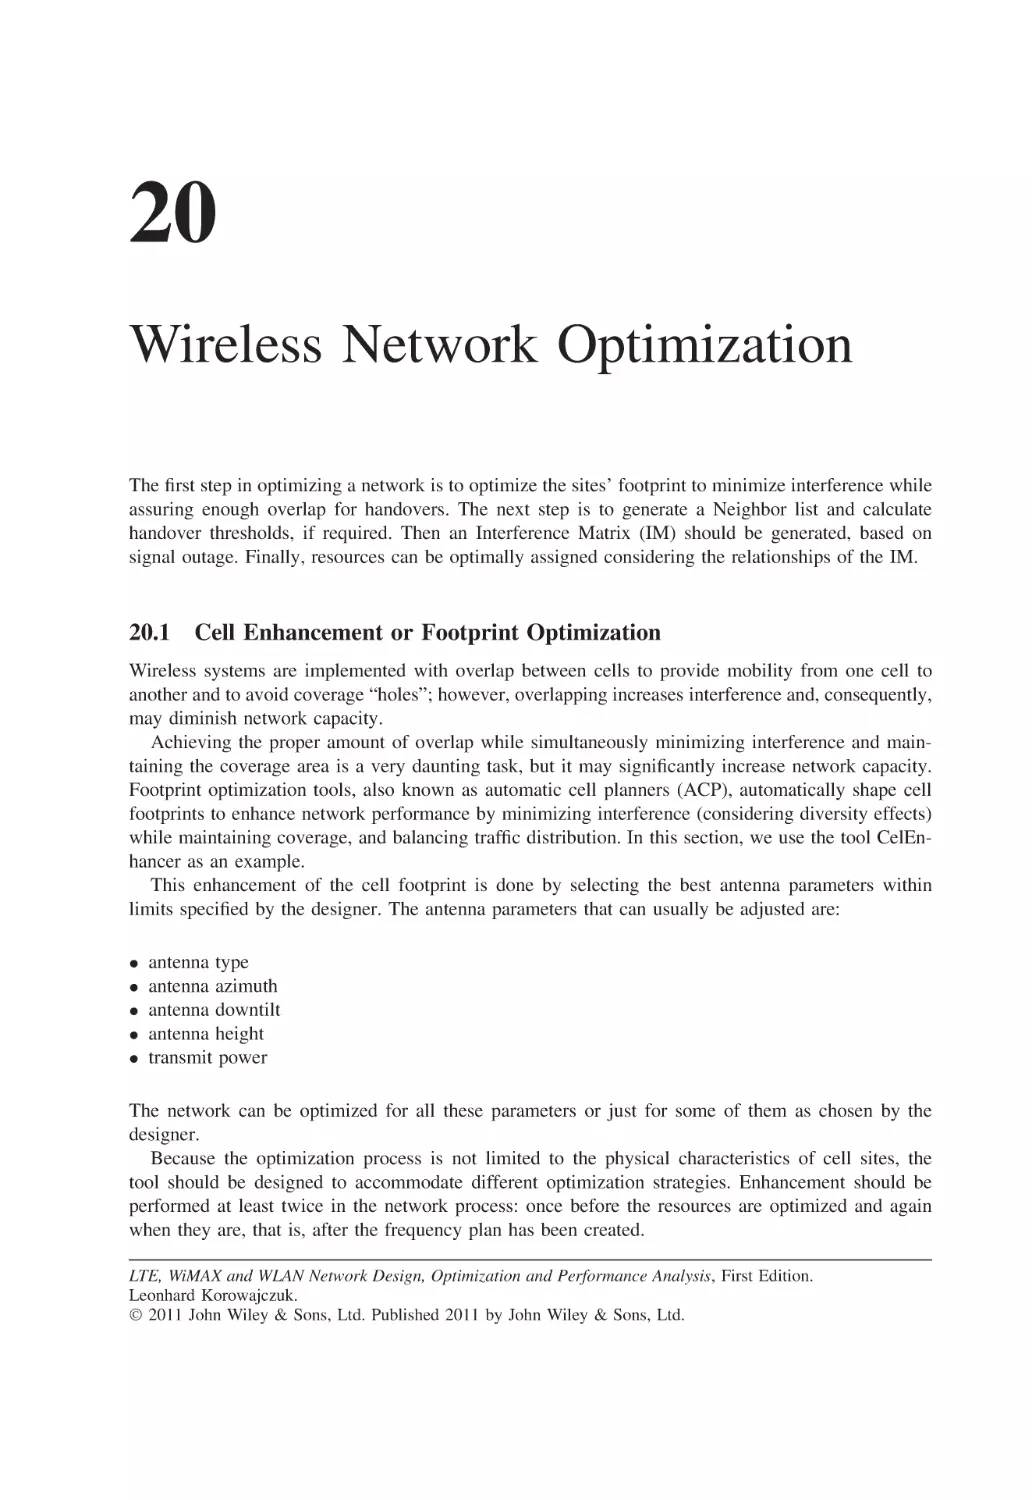 20 Wireless Network Optimization
20.1 Cell Enhancement or Footprint Optimization